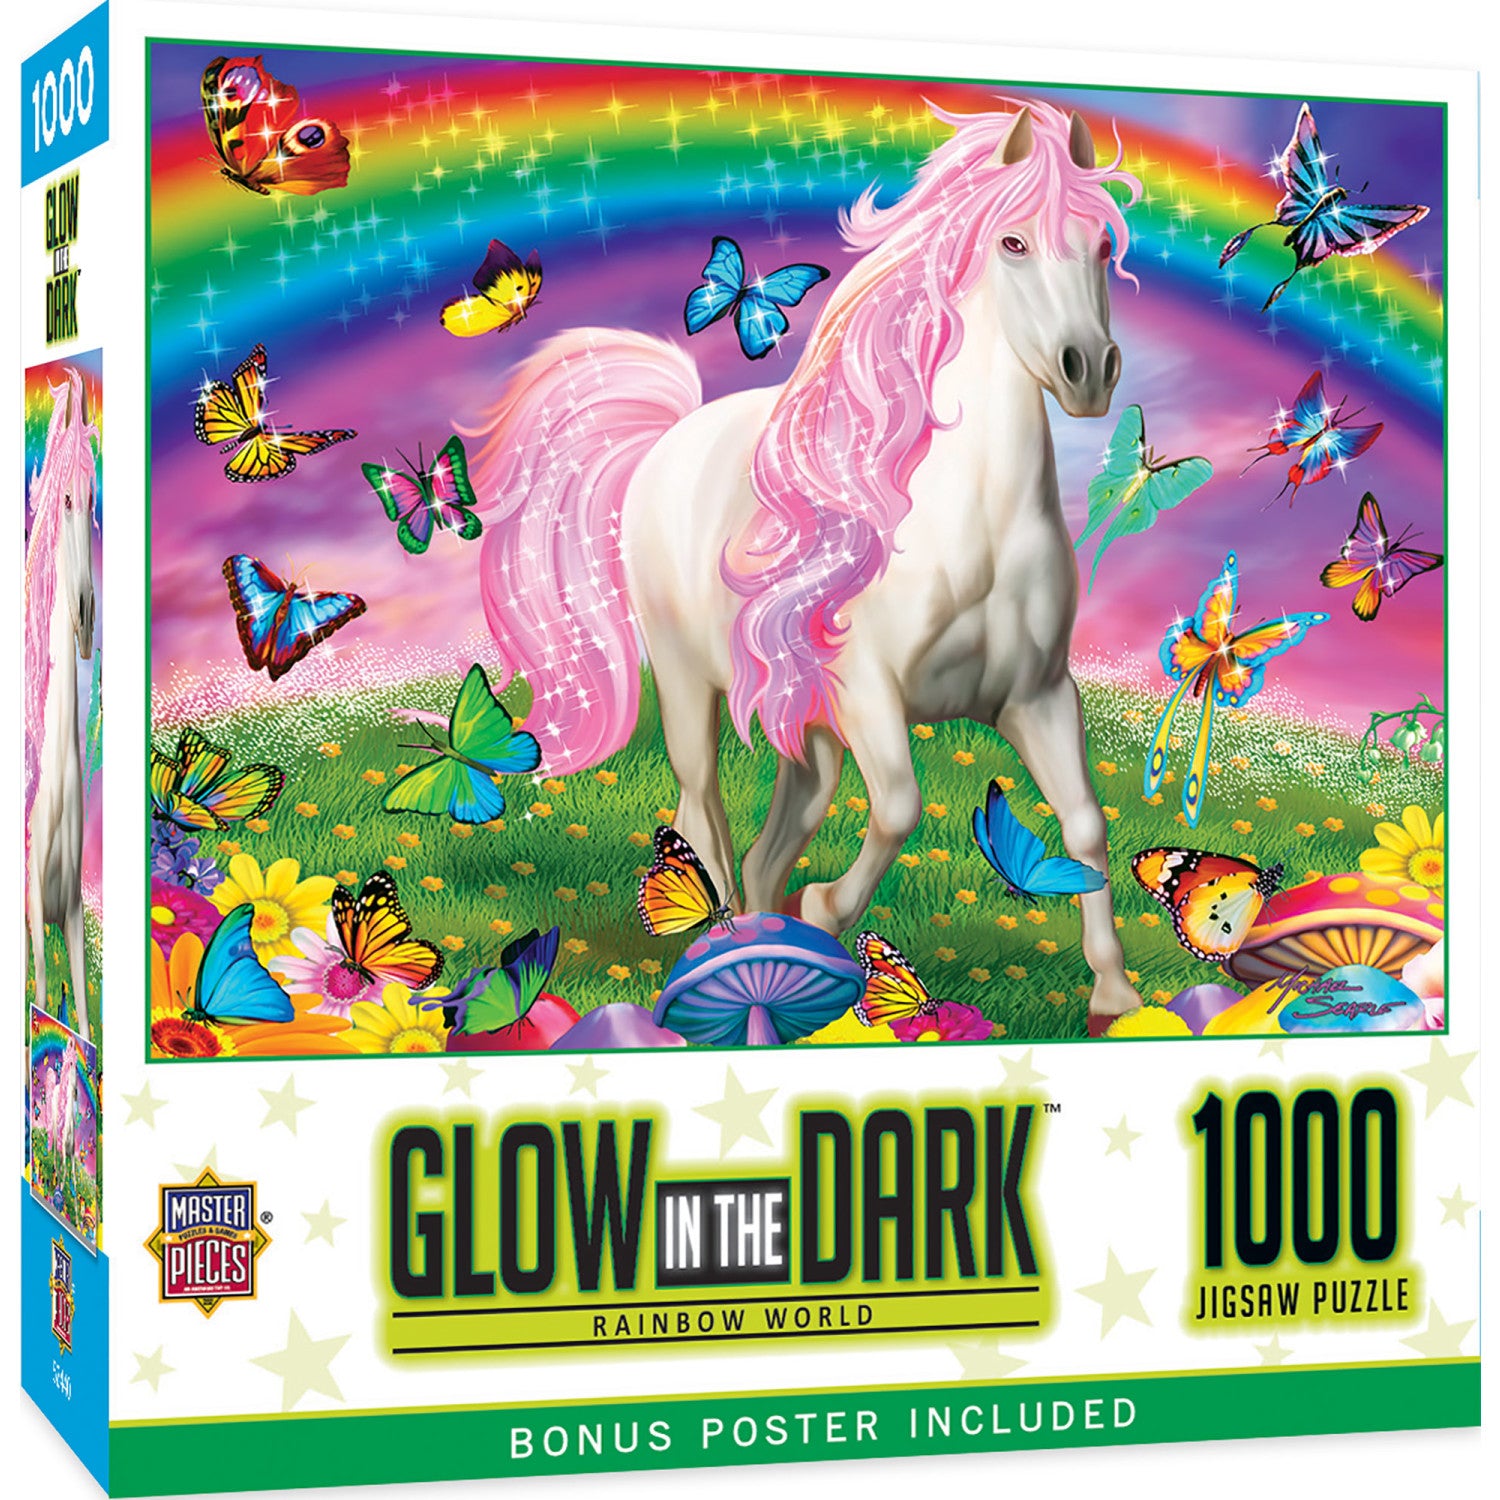 Glow in the Dark - Rainbow World 1000 Piece Jigsaw Puzzle